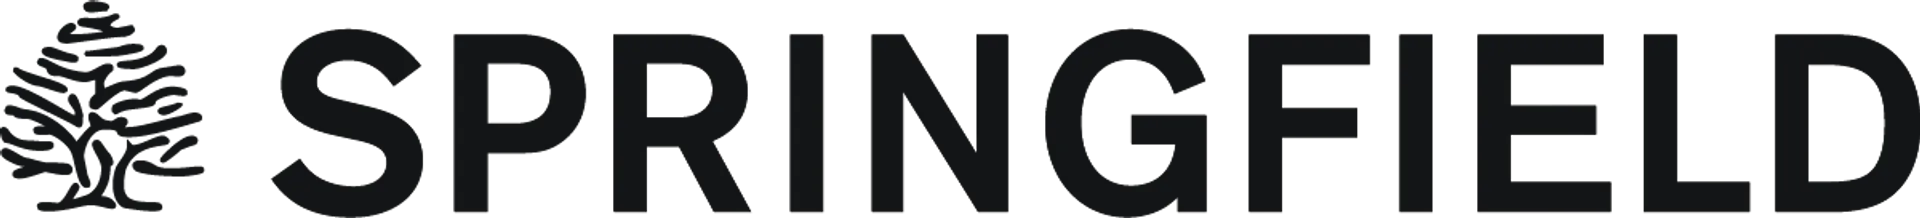 SPRINGFIELD logo die aktuell Flugblatt